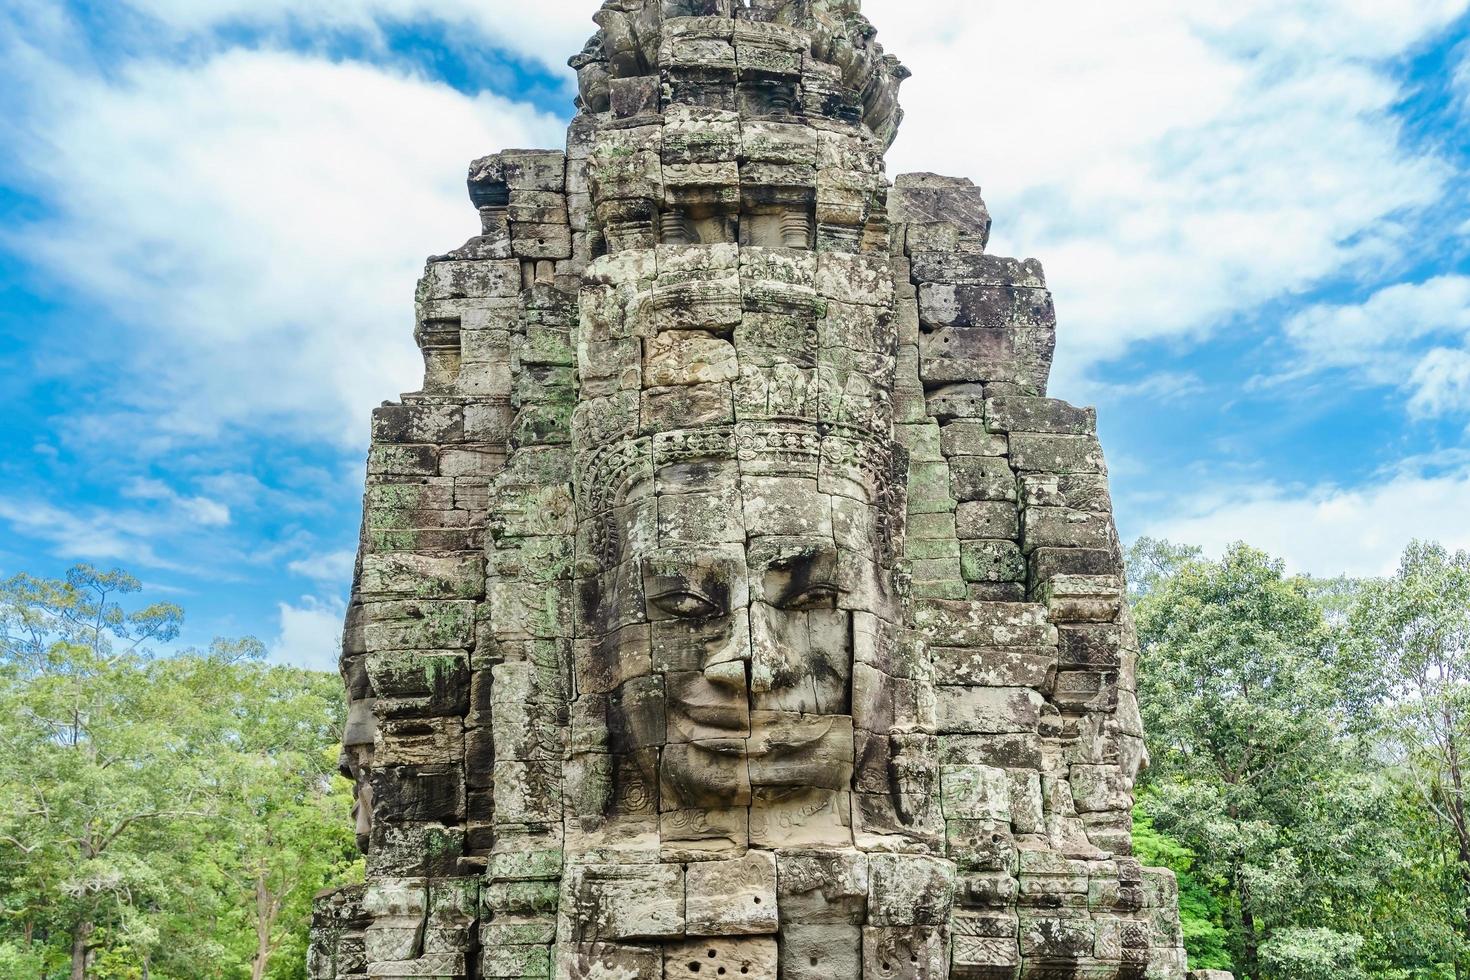 Antiguos rostros de piedra del templo de Bayon, Angkor Wat, Siam Reap, Camboya foto